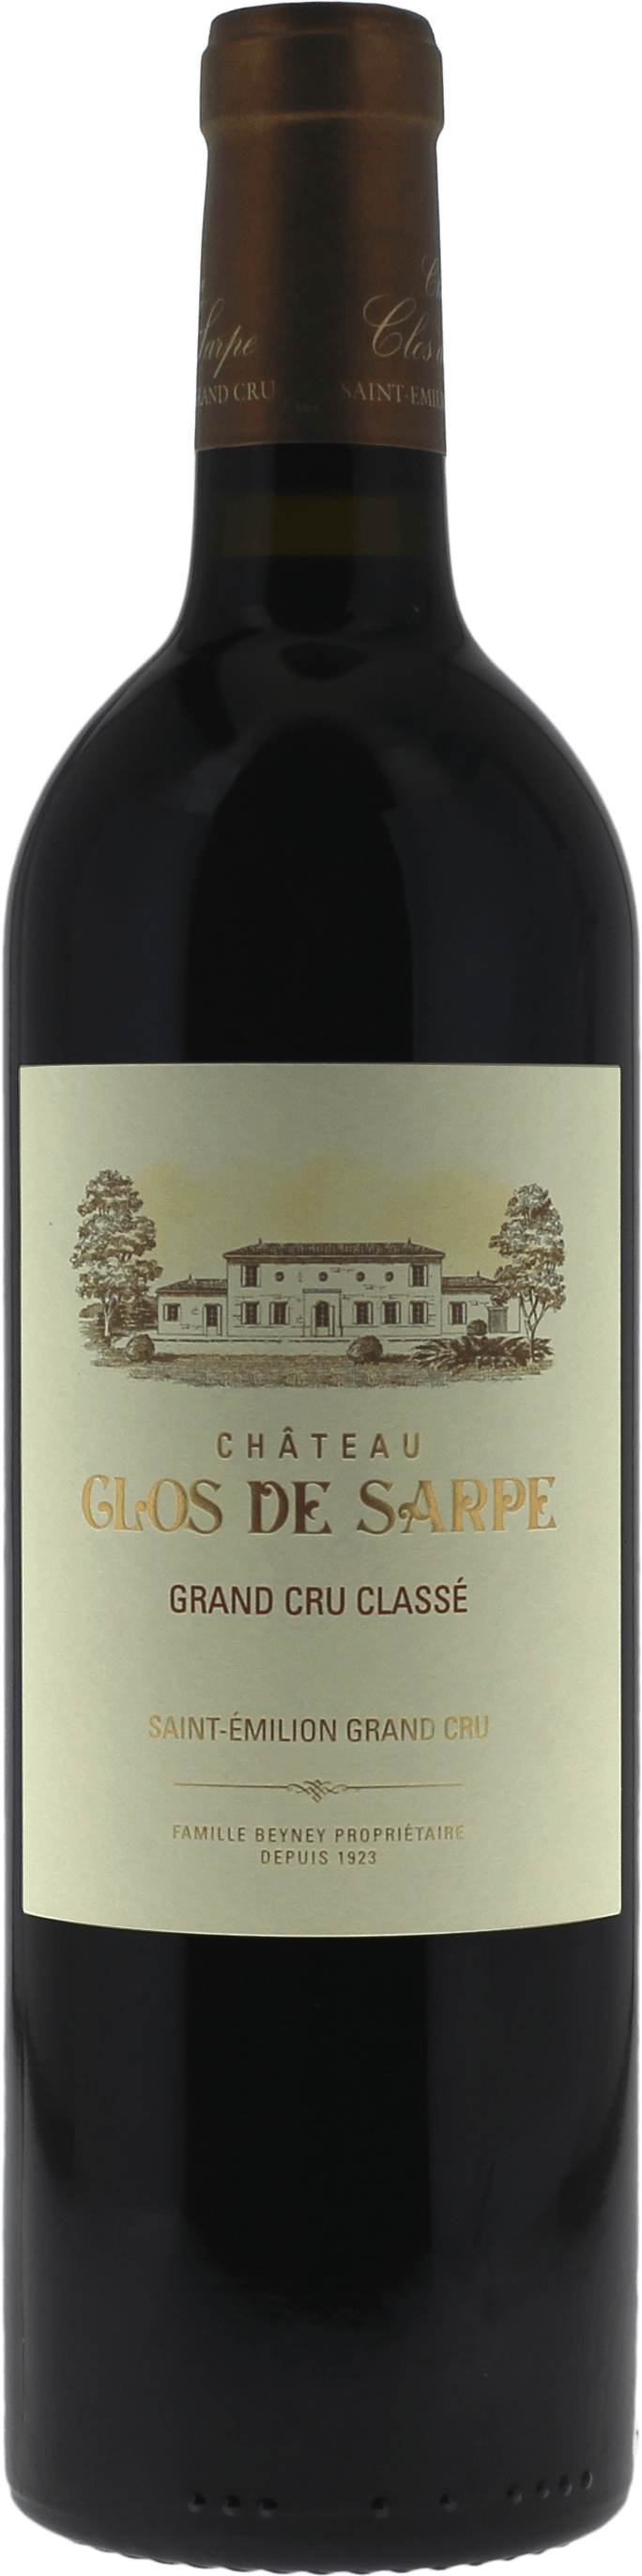 Clos de sarpe 2019 Grand Cru Class Saint-Emilion, Bordeaux rouge